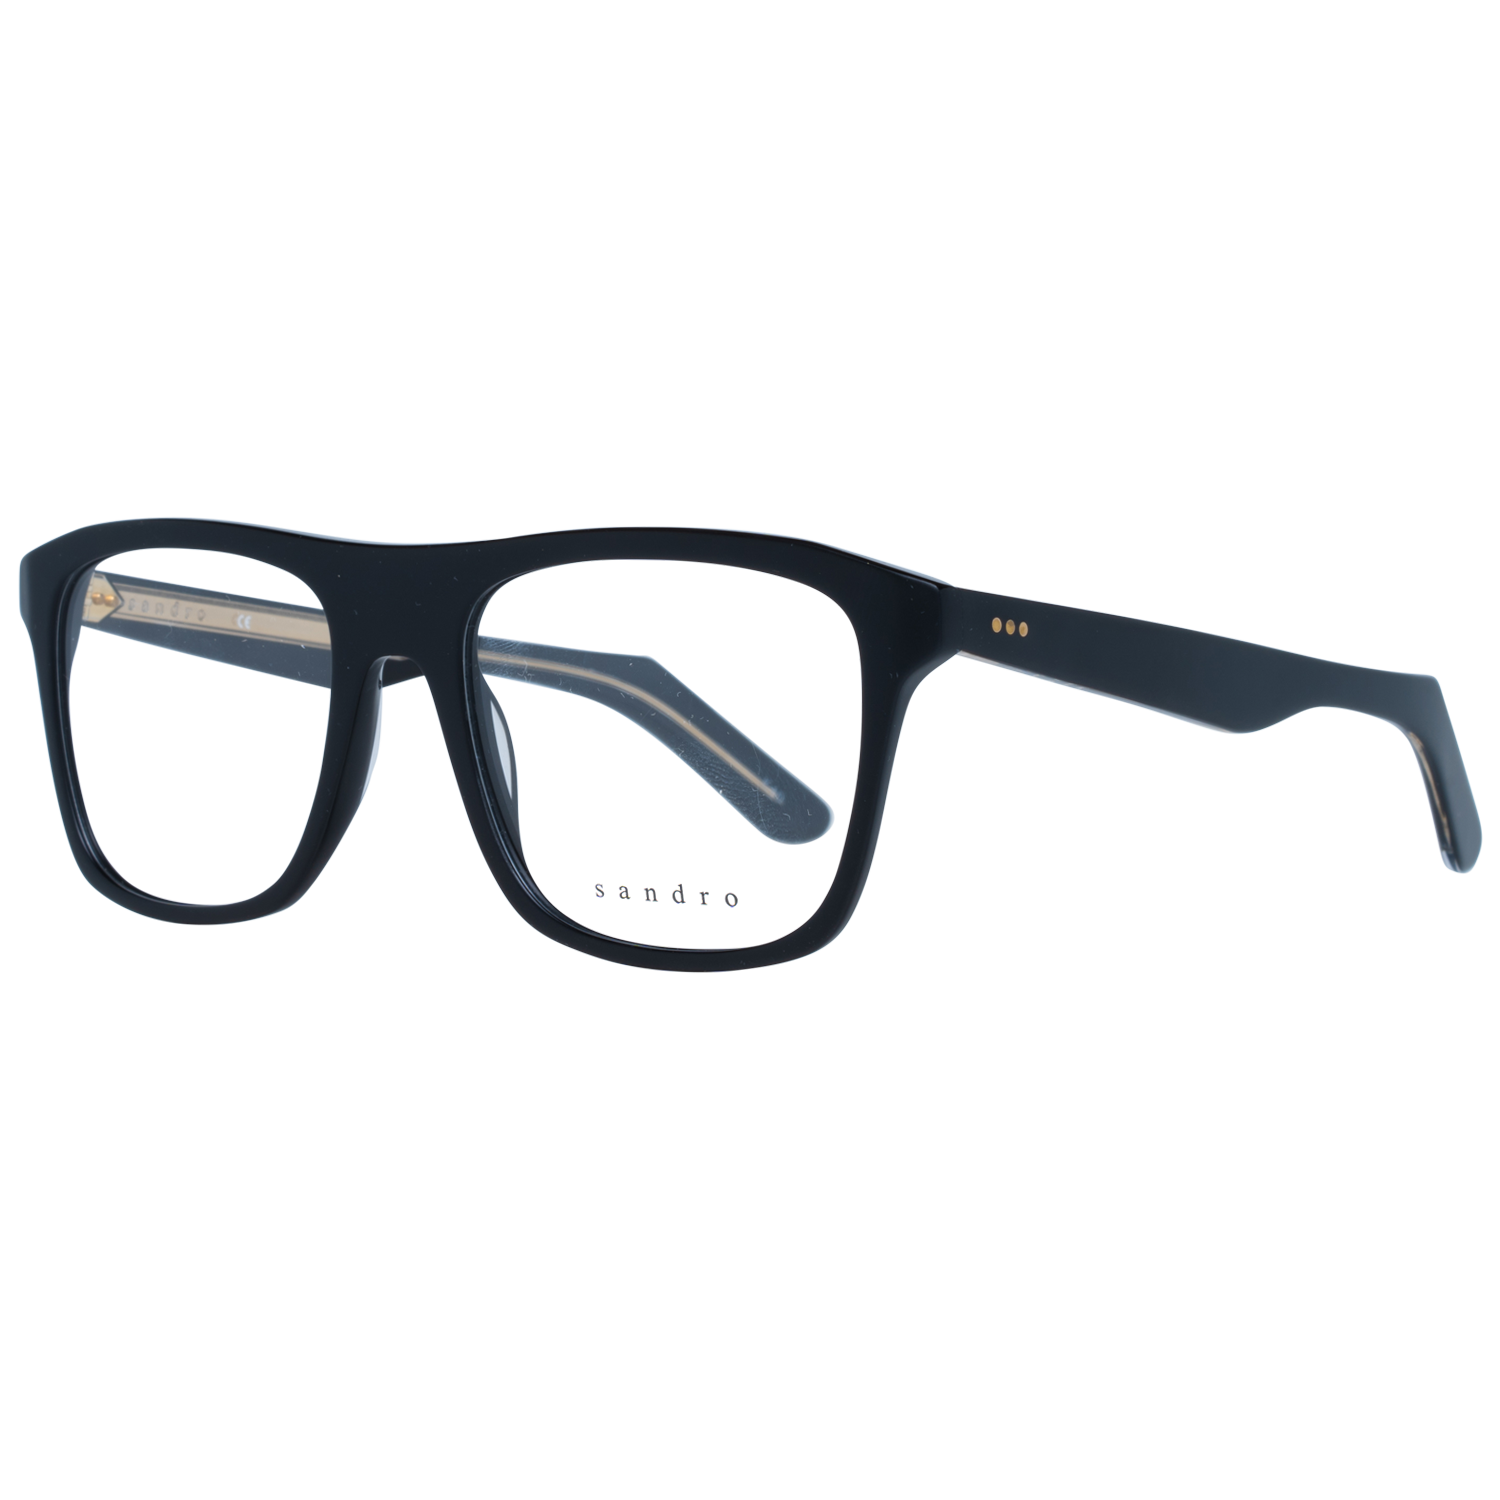 Sandro Frames Sandro Optical Frame SD1003 001 52 Eyeglasses Eyewear UK USA Australia 